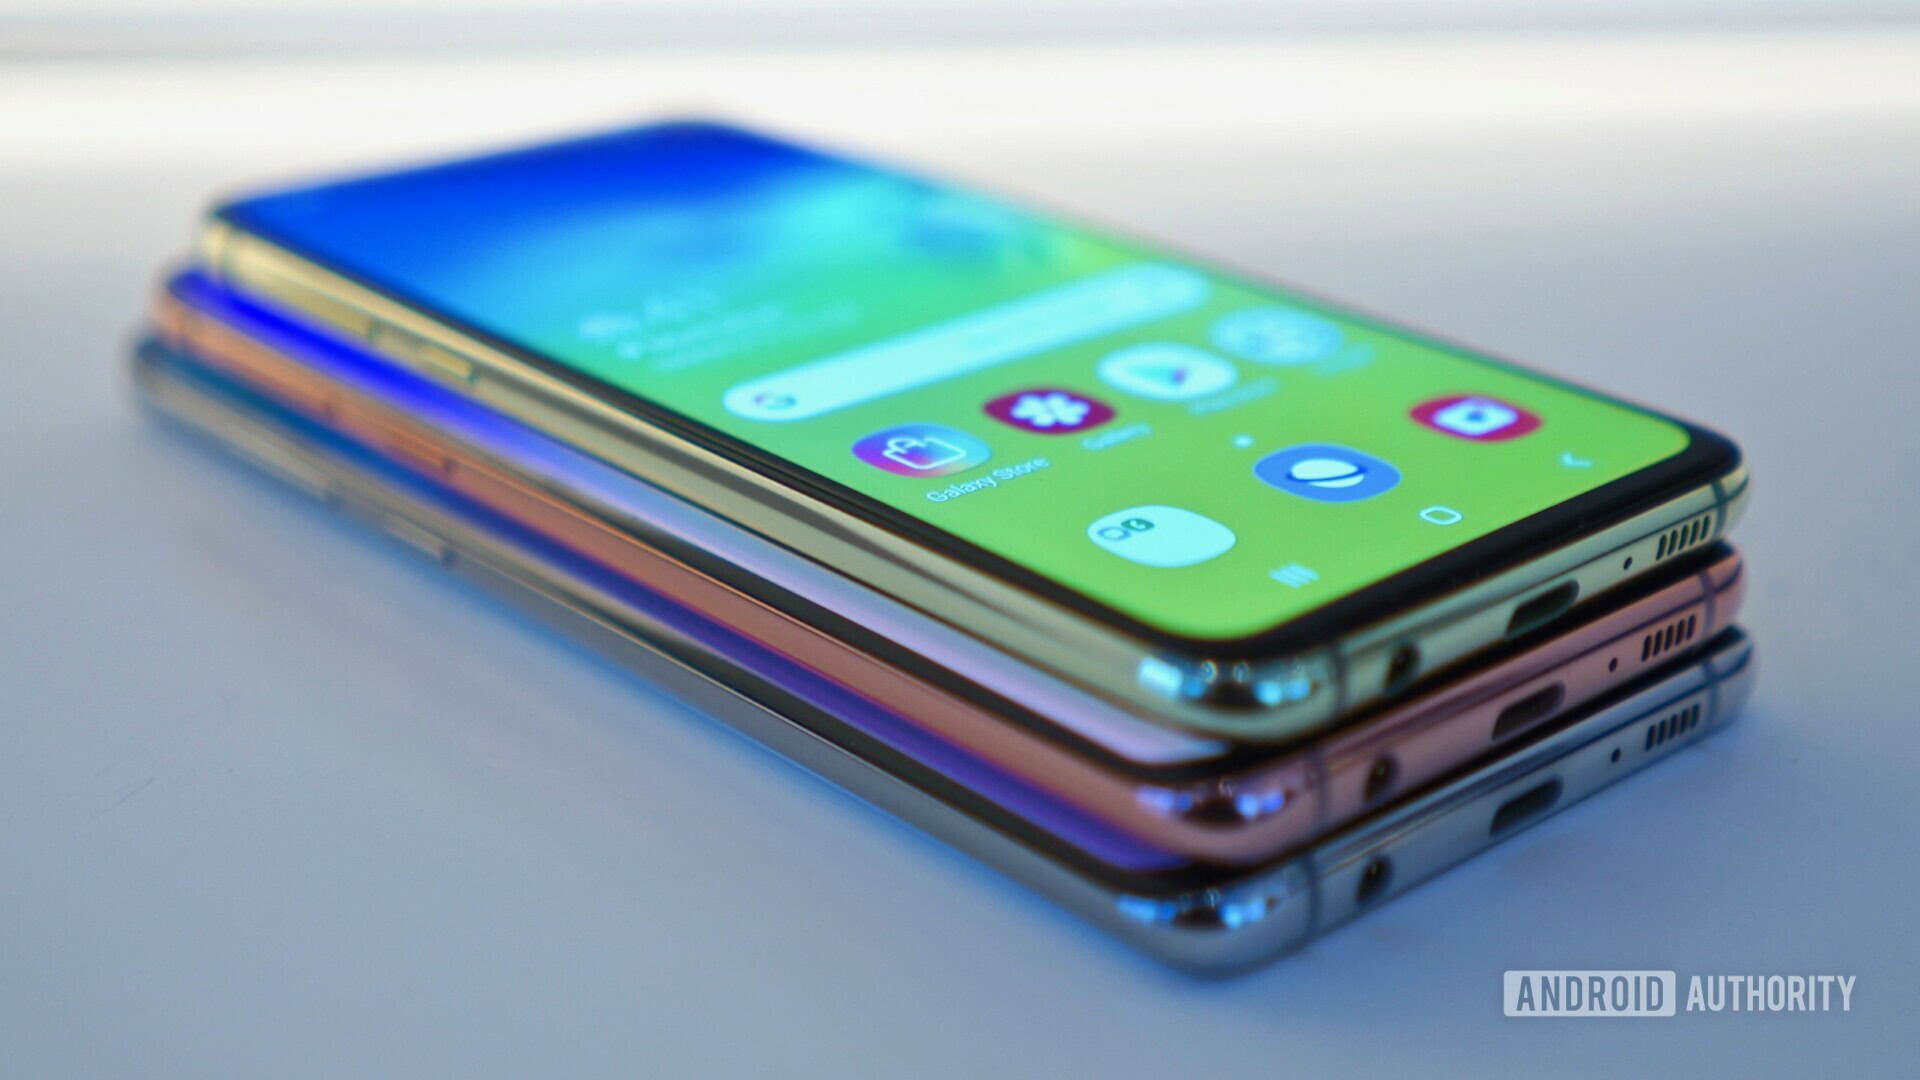 Samsung Galaxy S10e, S10, S10+ & S10 5G